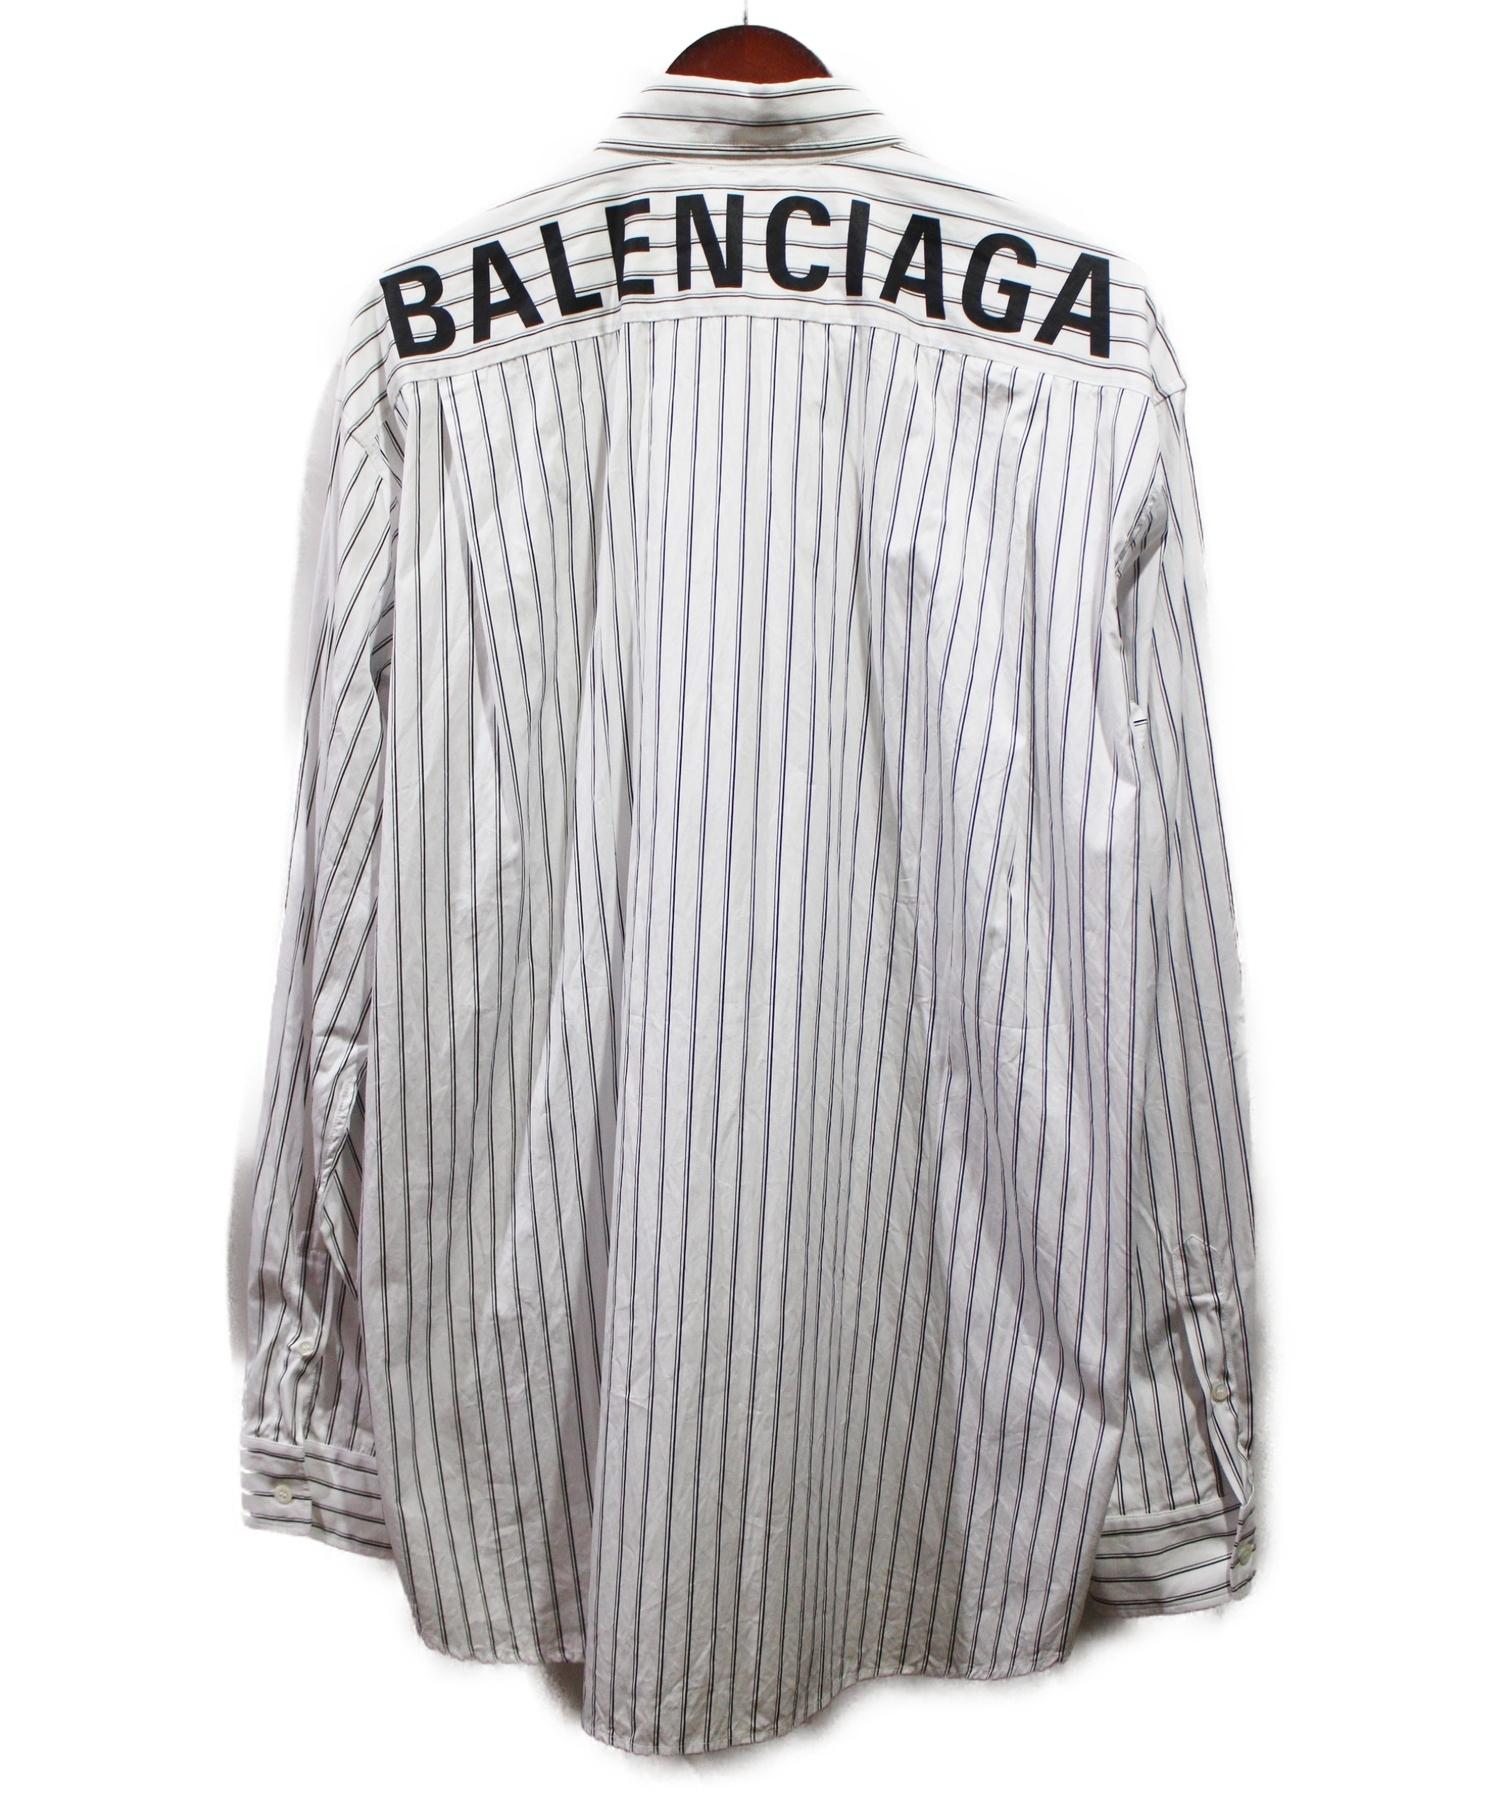 中古 古着通販 Balenciaga バレンシアガ 19ss バックロゴストライプシャツ サイズ 39 ブランド 古着通販 トレファク公式 Trefac Fashion